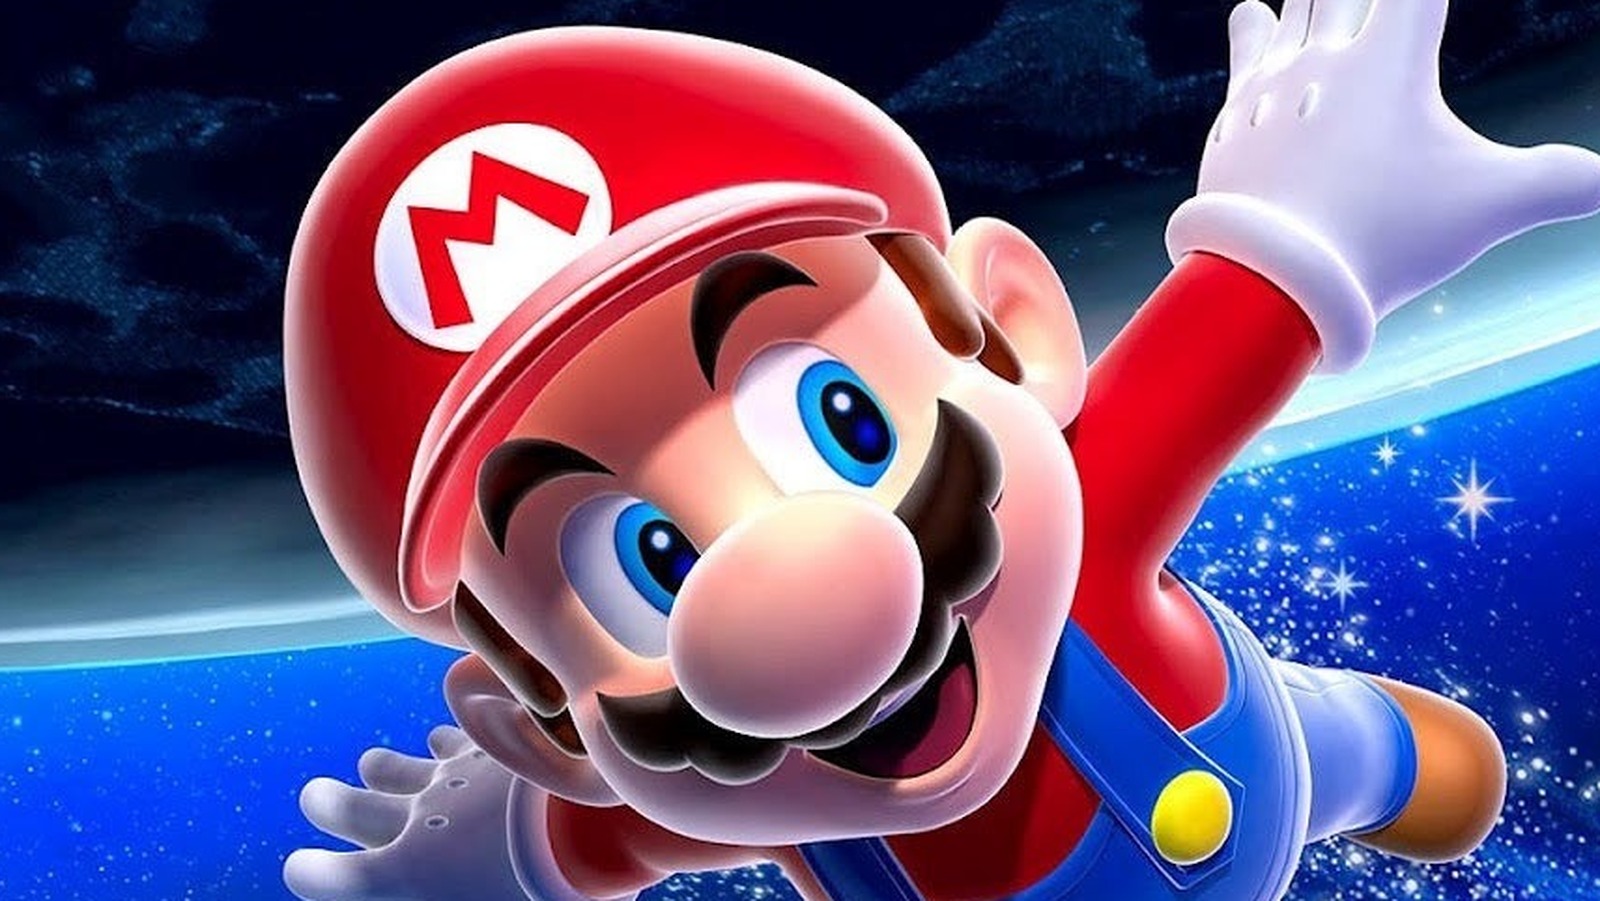 Ce se sărbătorește pe 10 martie? E ziua personajului Mario din jocurile video, dar și a cimpoiului